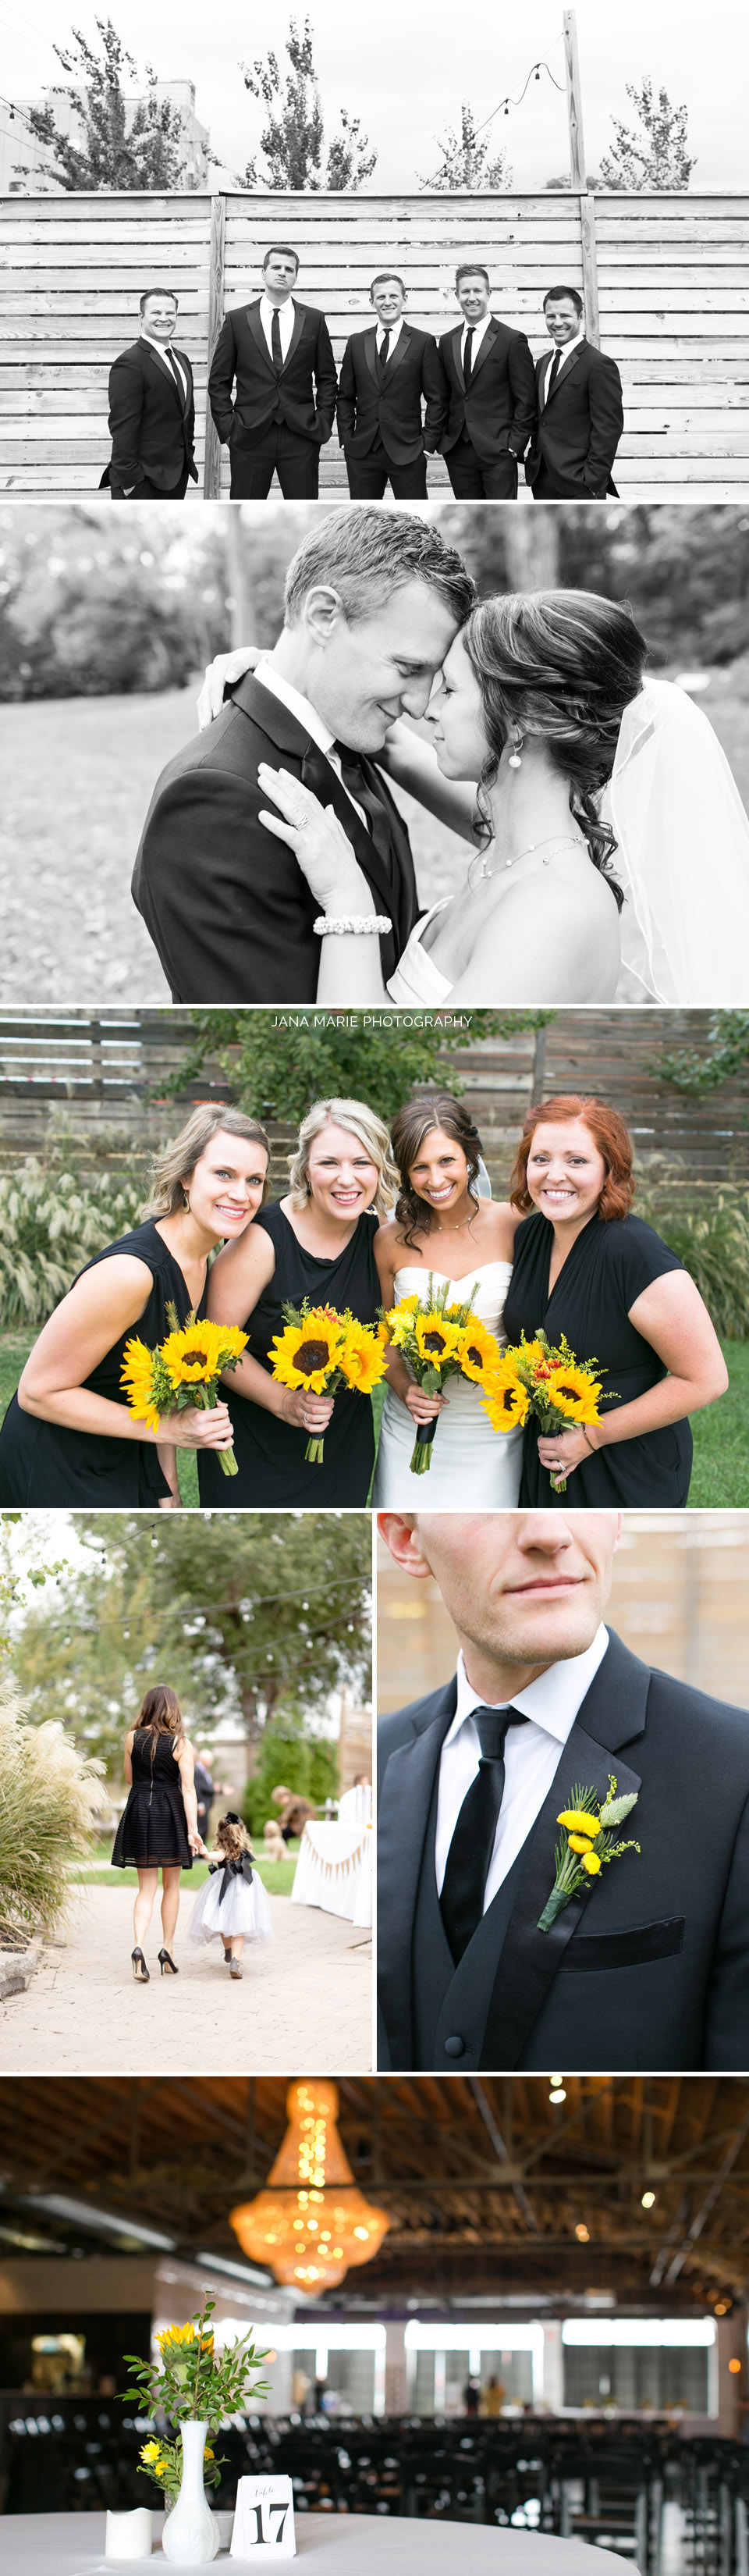 The Guild KC, KC photographer, KC weddings, Kansas City wedding photographer, BEST Kansas City photographer, Fall wedding, Sunflower bouquet, KCMO, #kcloves, #kansascityloves